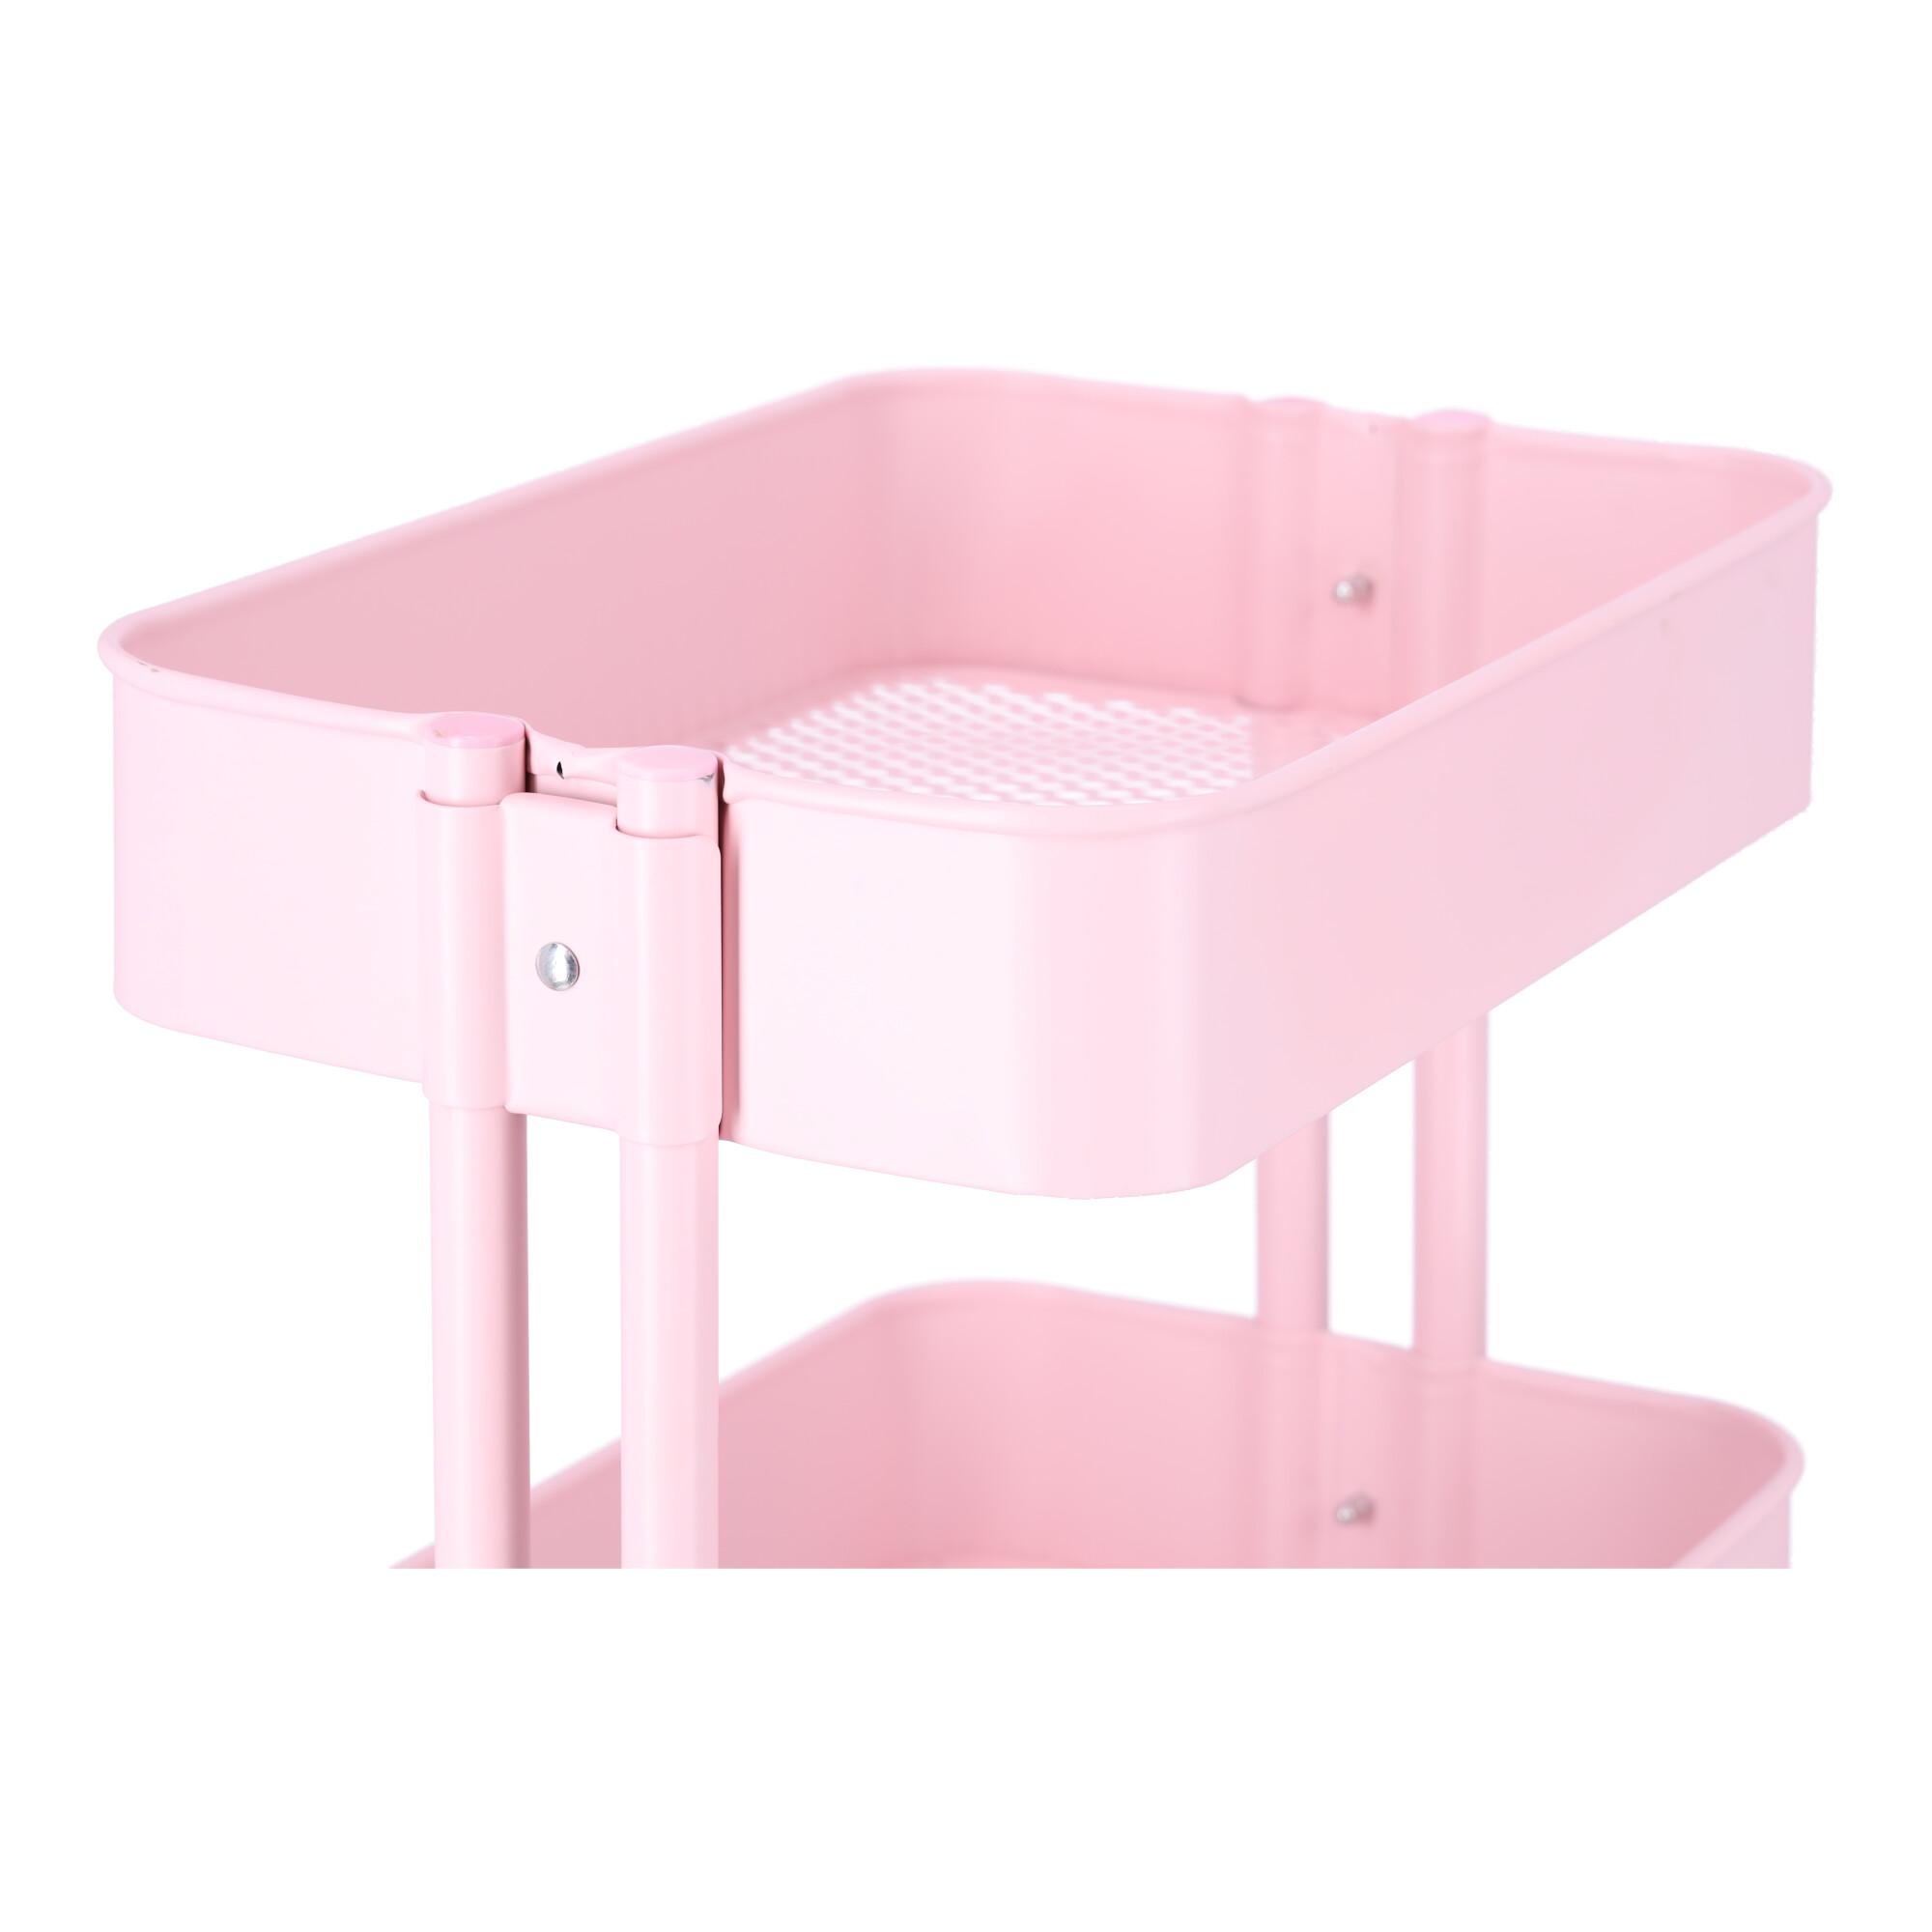 Wózek łazienkowy, regał kuchenny z trzema pojemnymi półkami - różowy